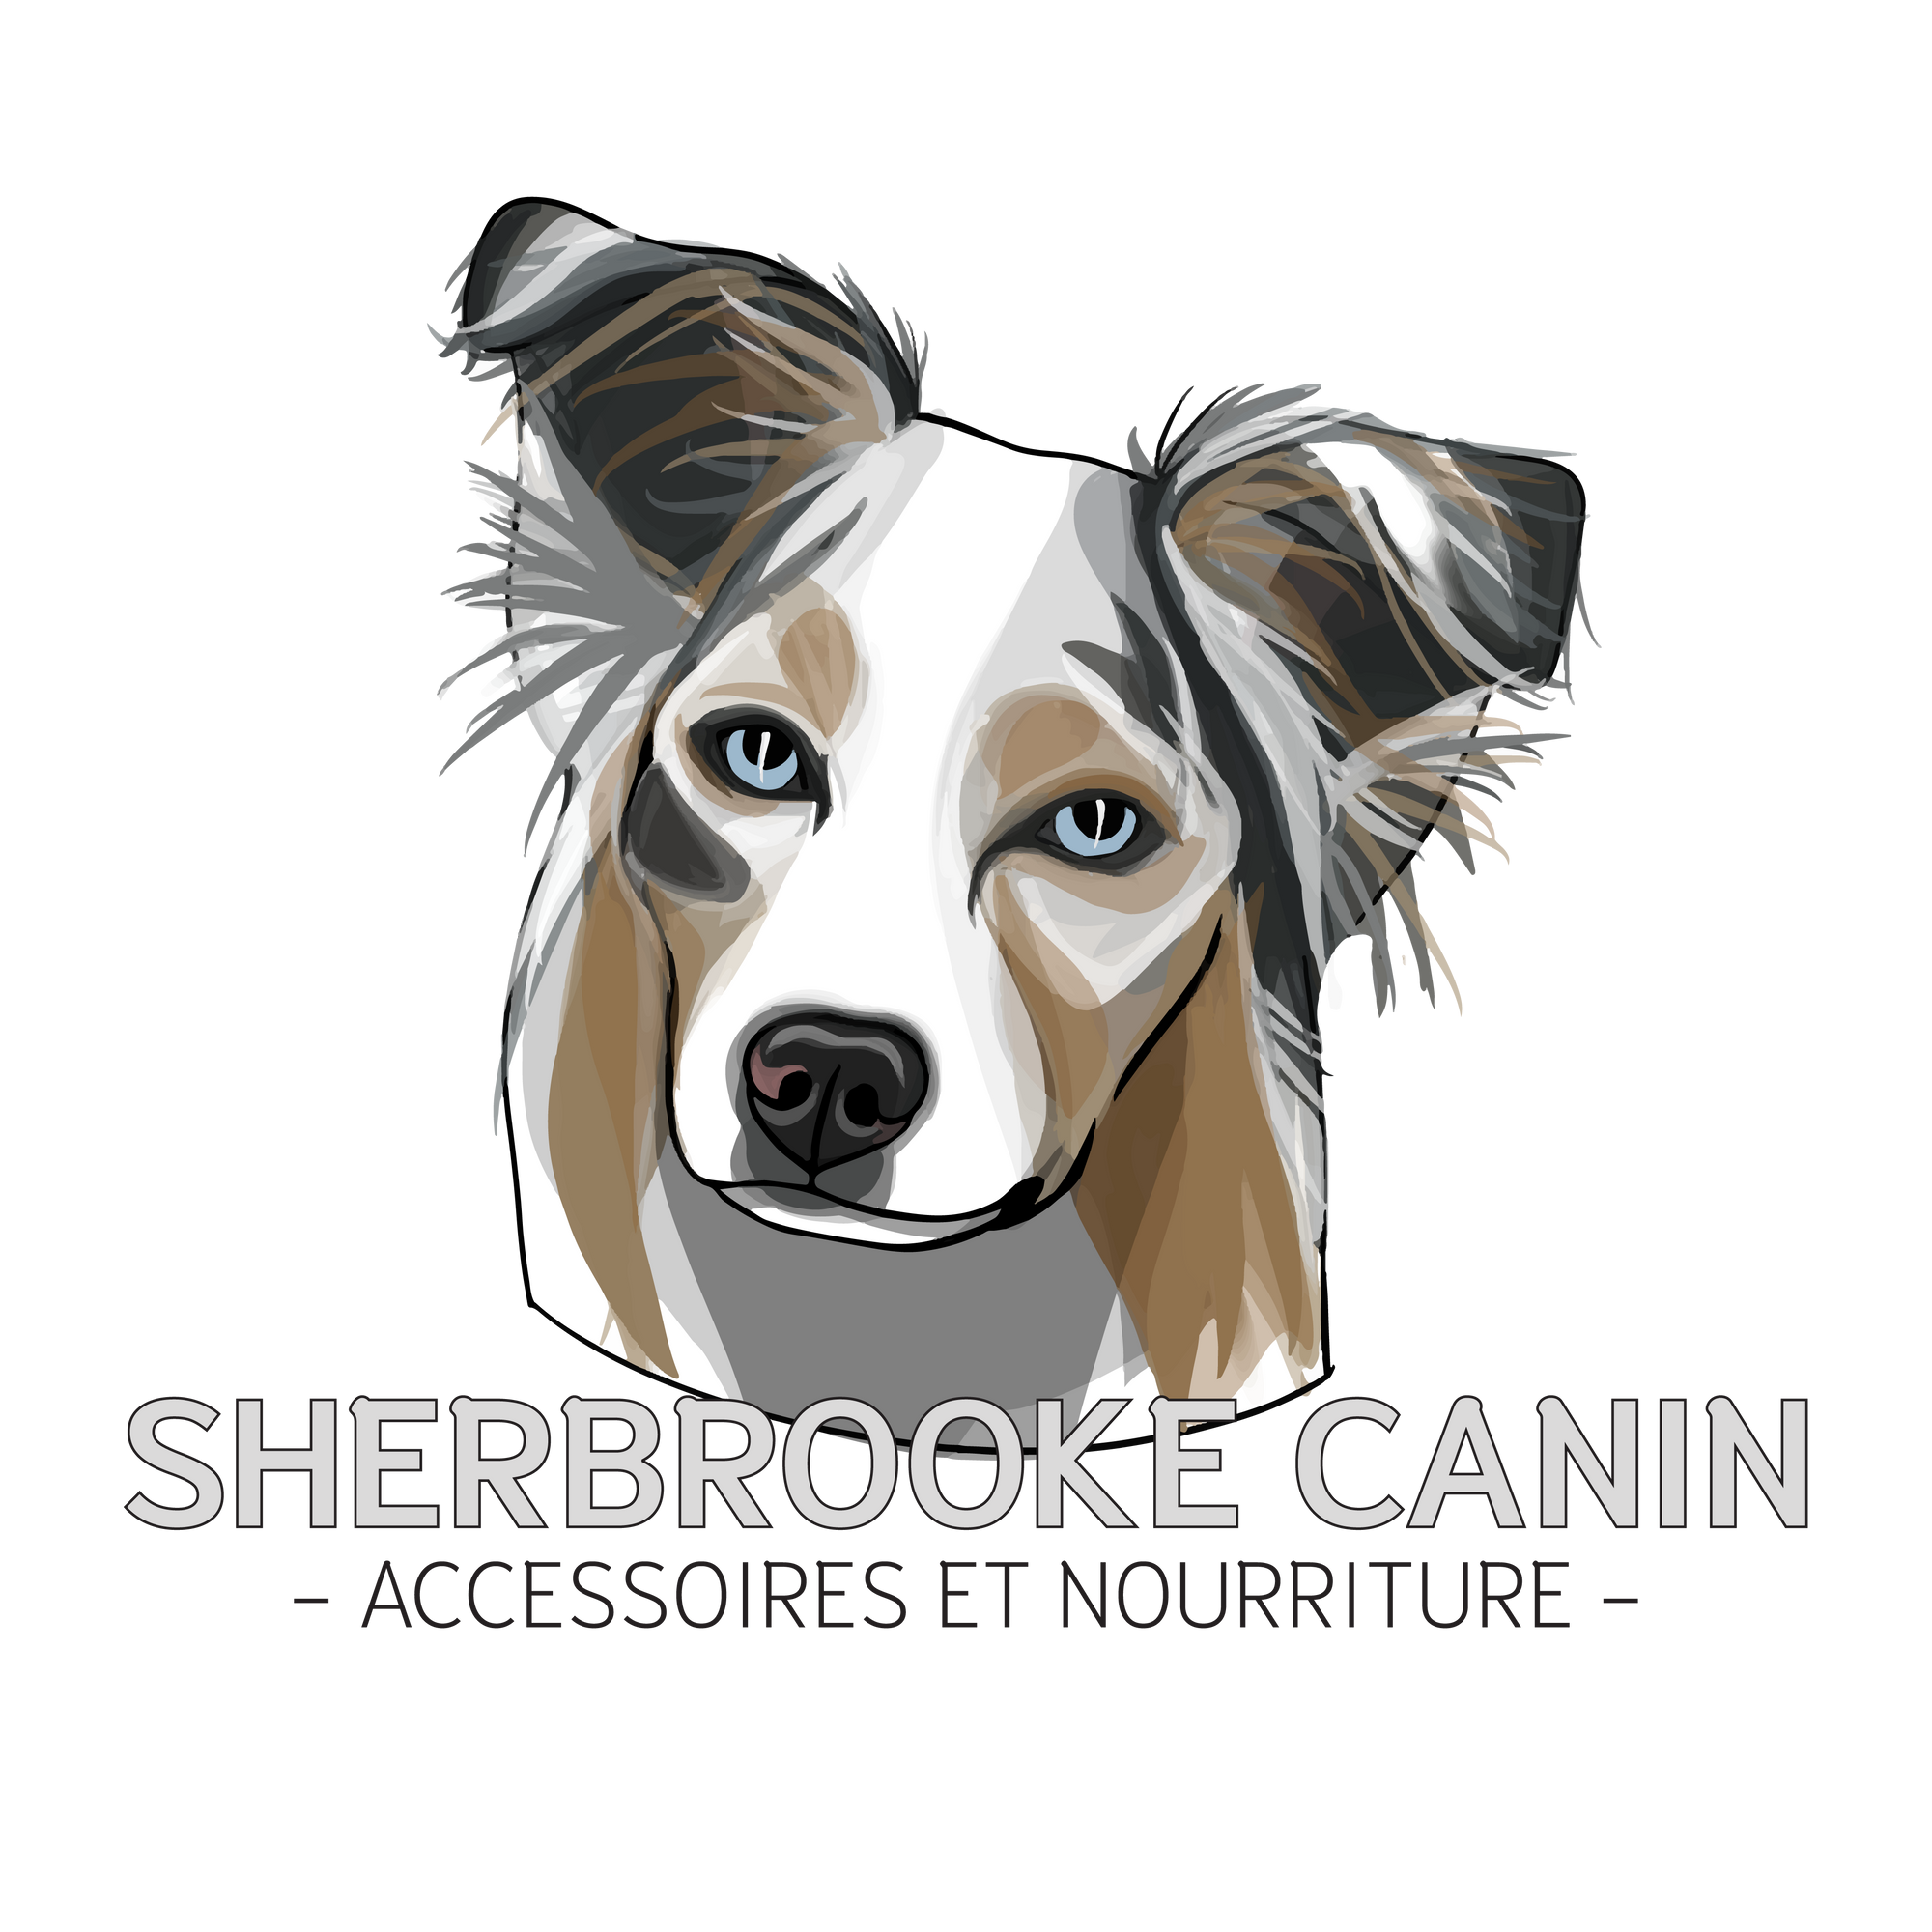 Du changement - Sherbrooke Canin